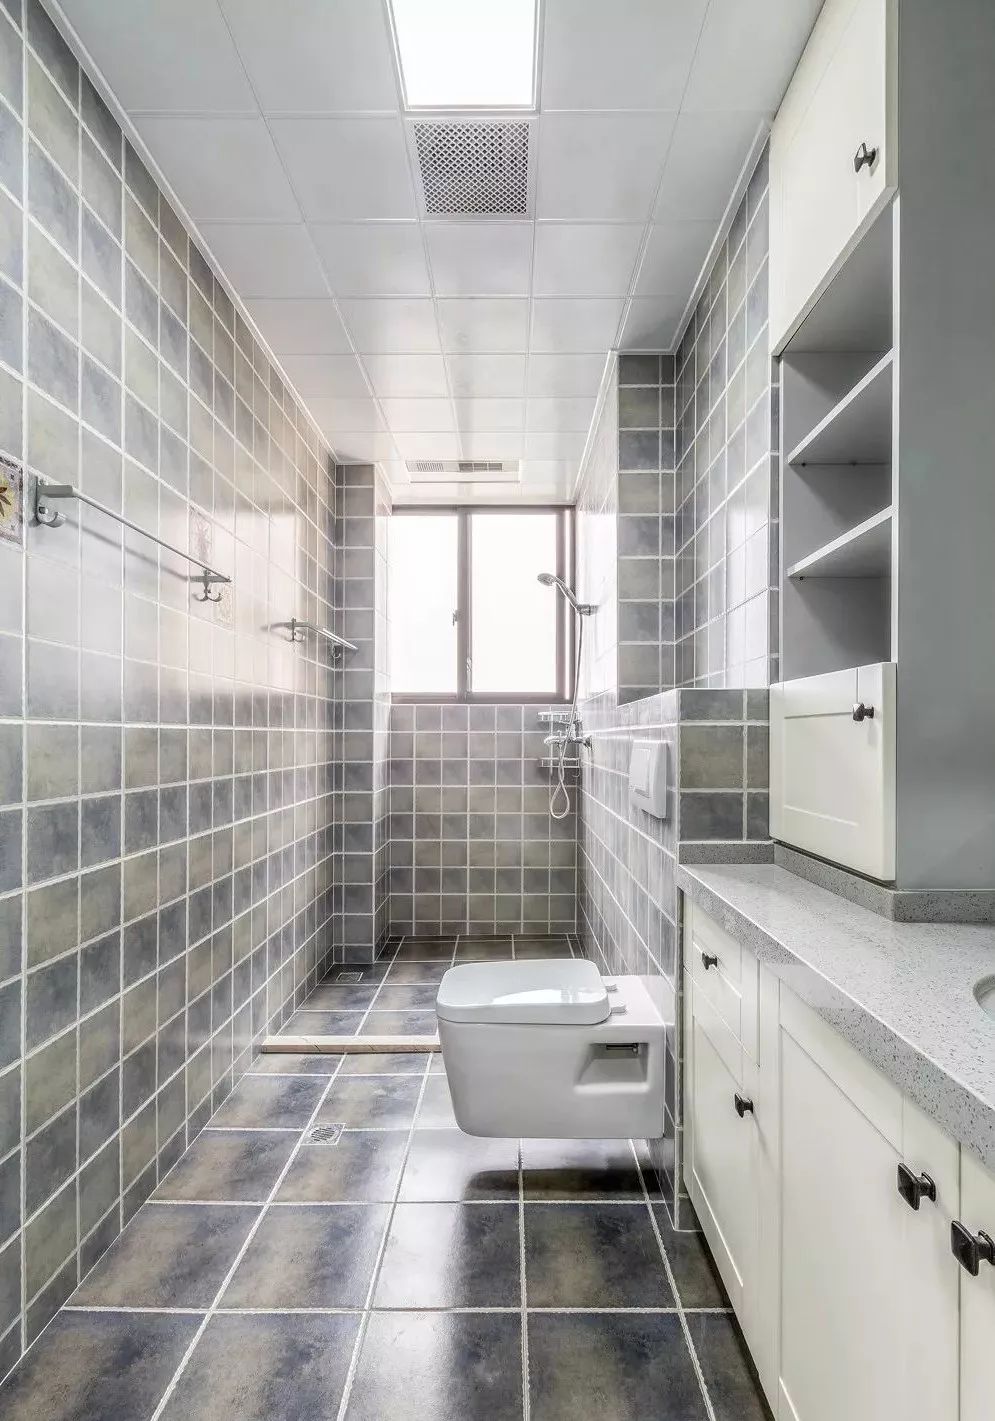 卫生间通铺灰色系墙砖地砖与白色橱柜形成鲜明的对比,干净又清爽